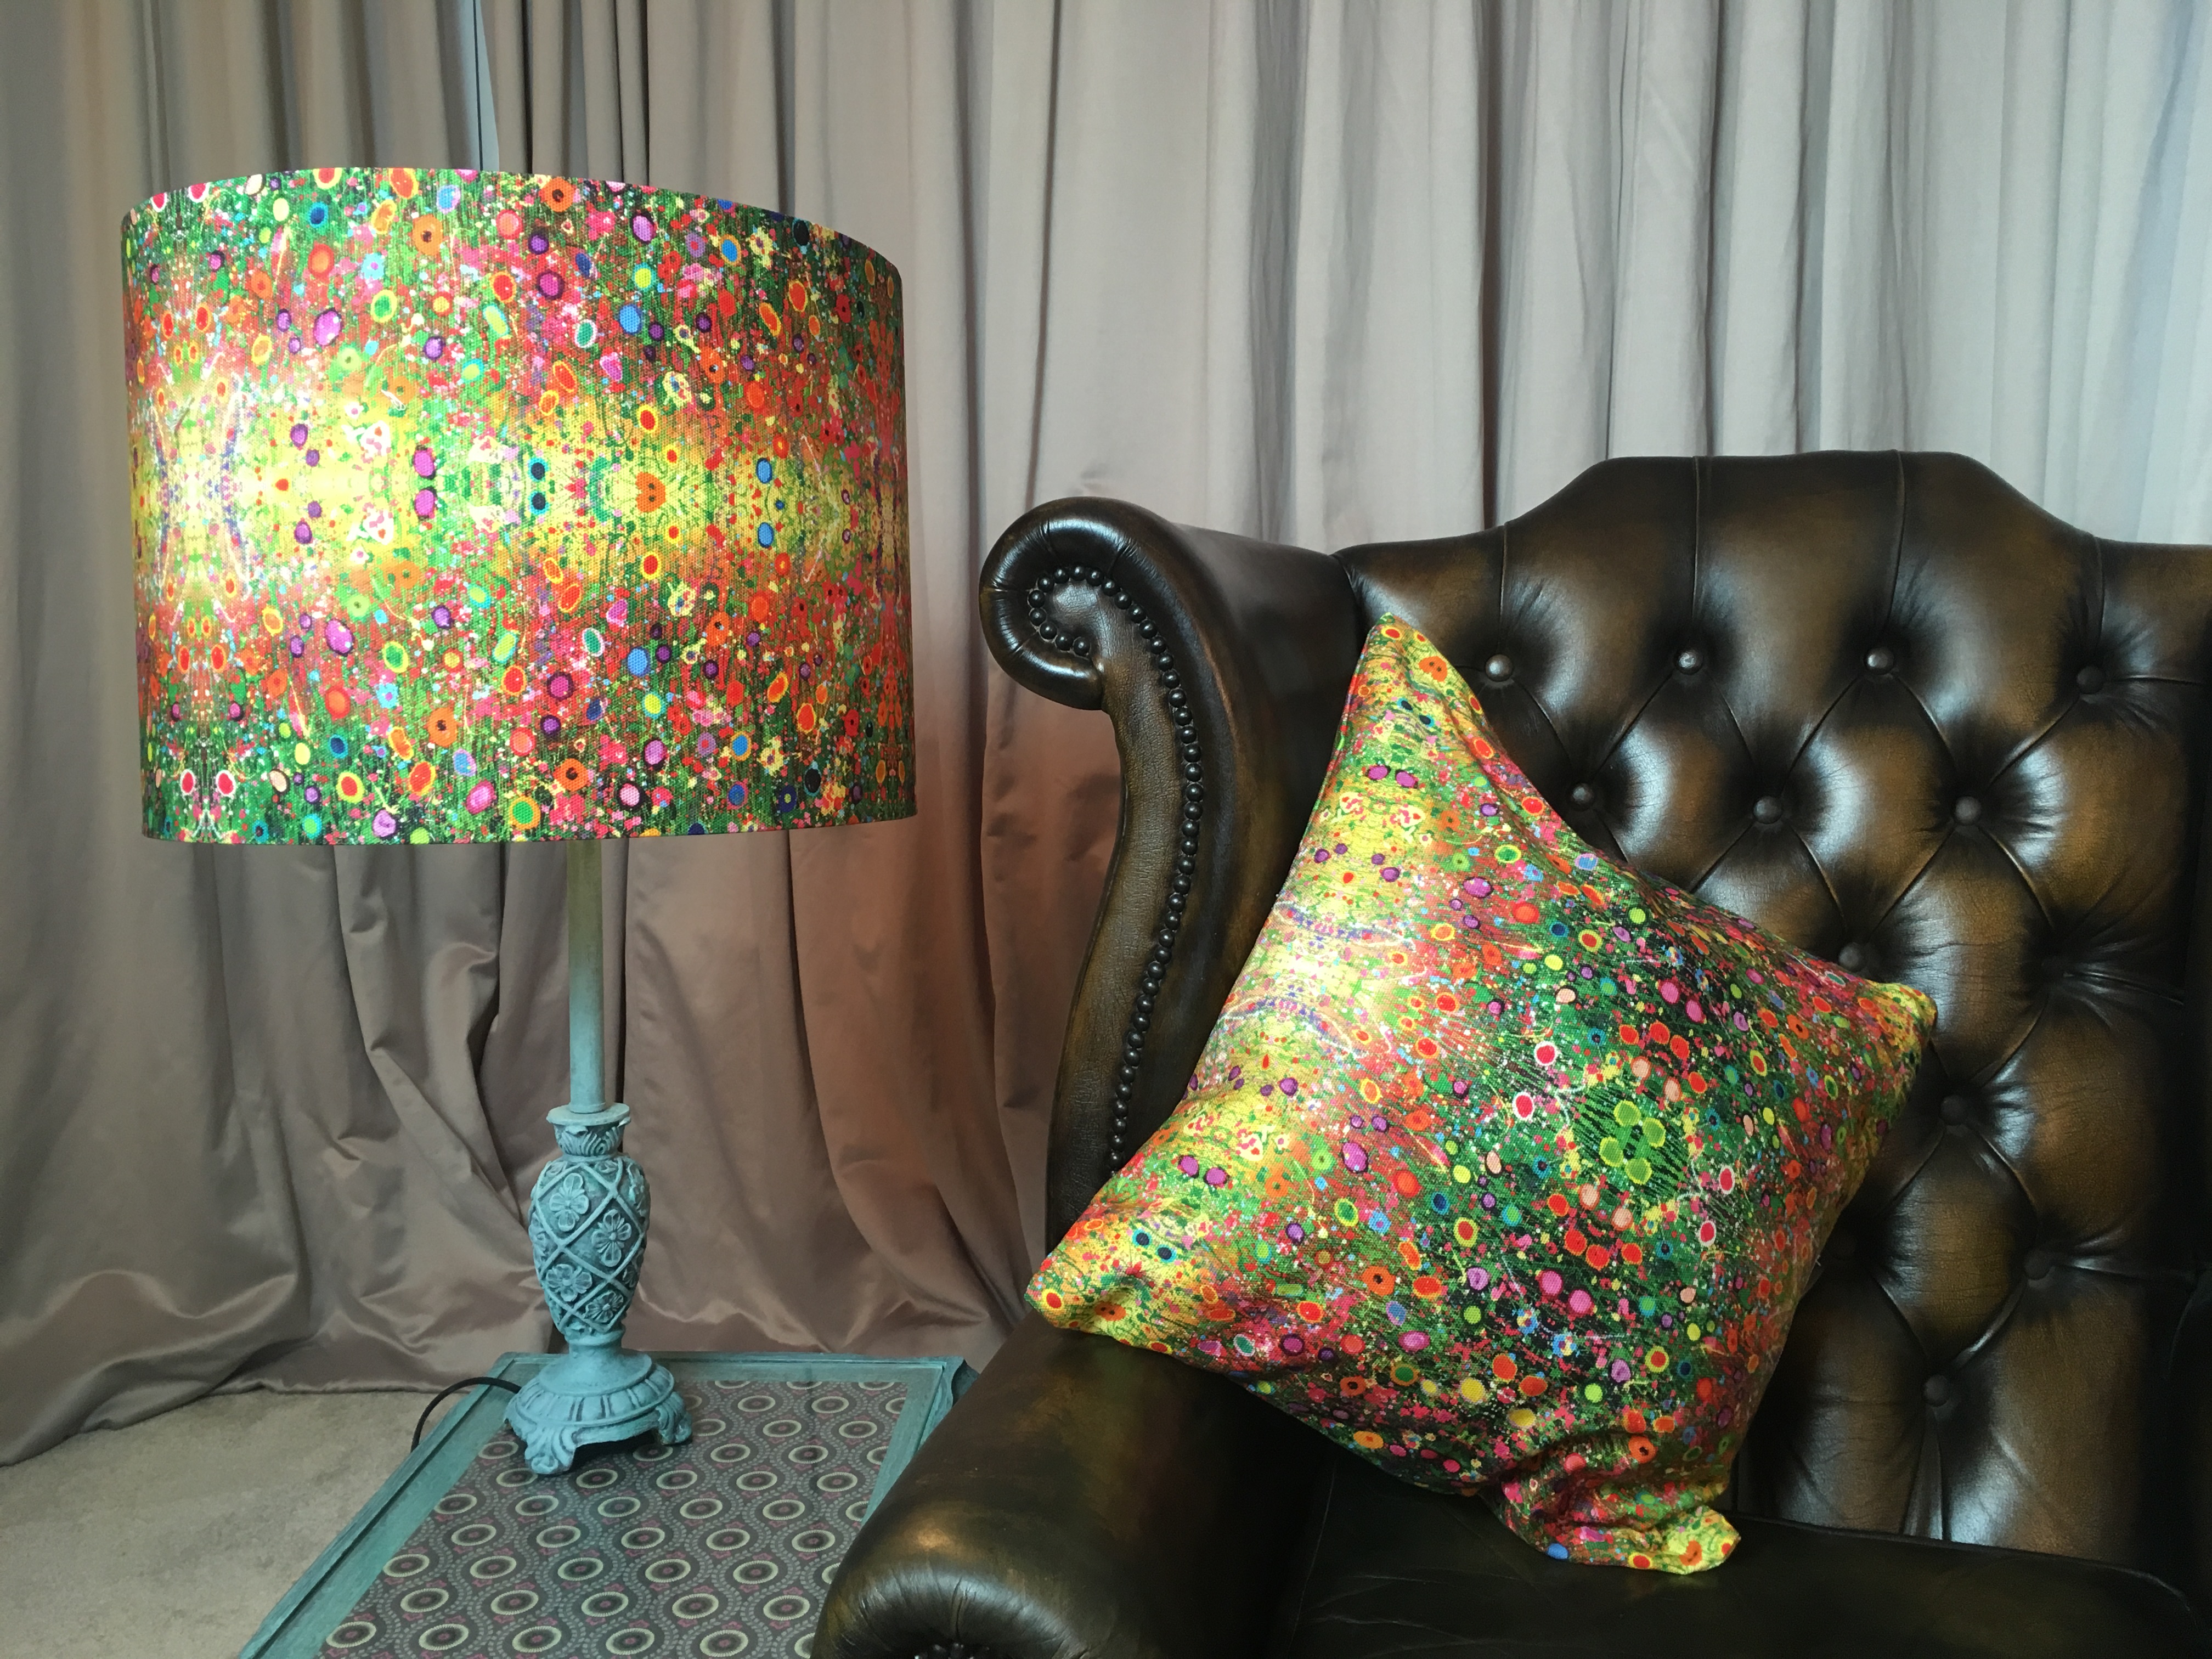 cushions and lamp shade